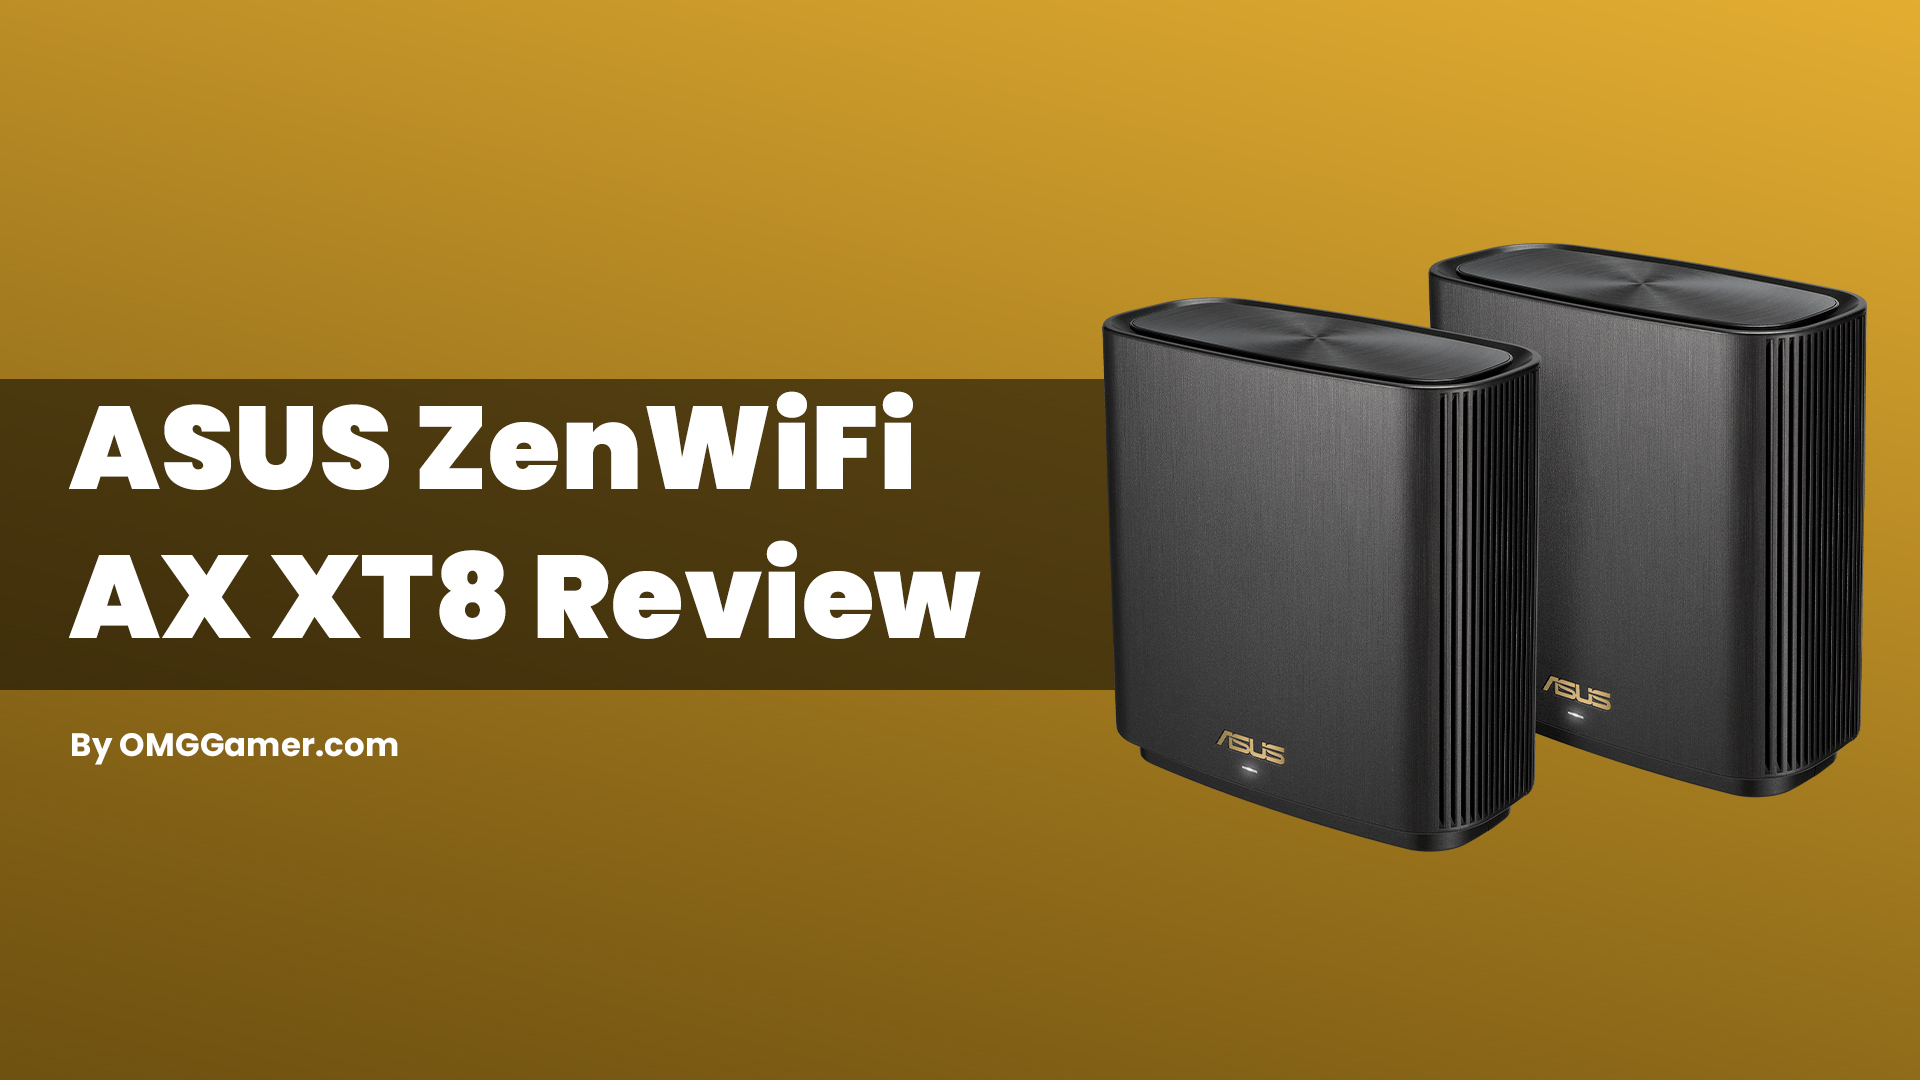 ASUS ZenWiFi AX XT8 Review